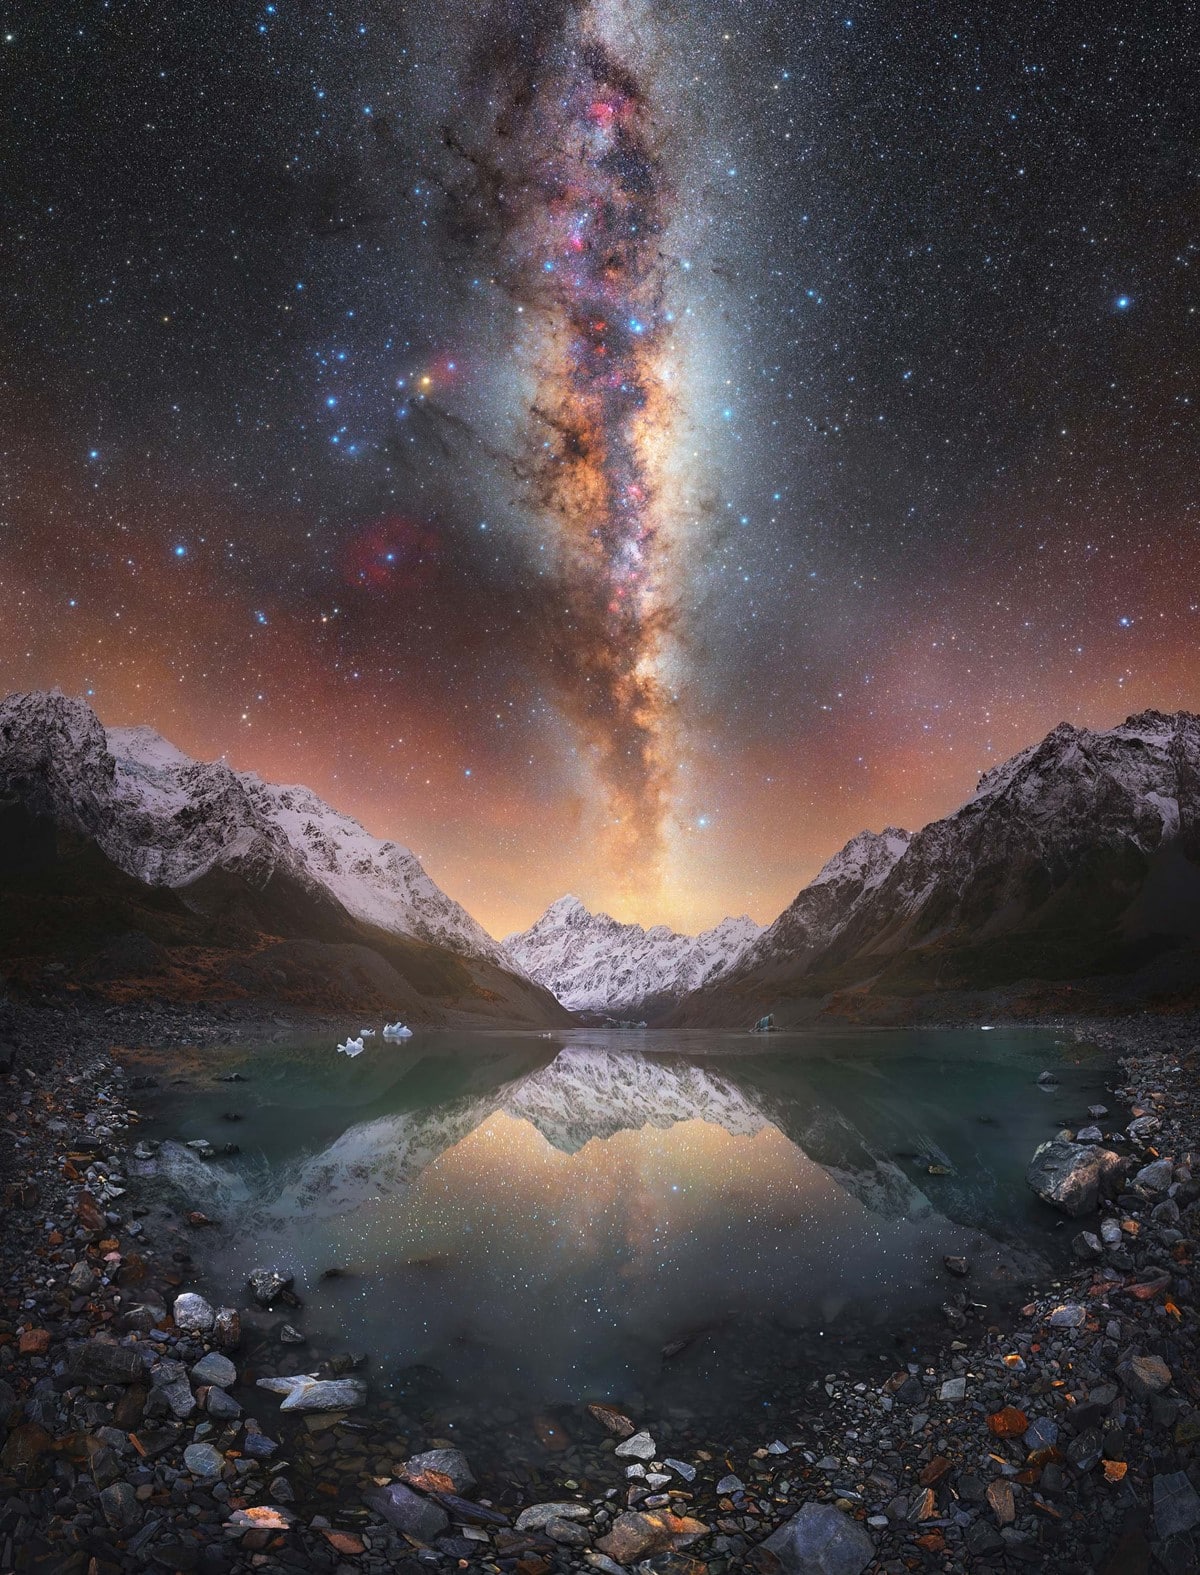 Milky Way over Aoraki/Mount Cook in New Zealand